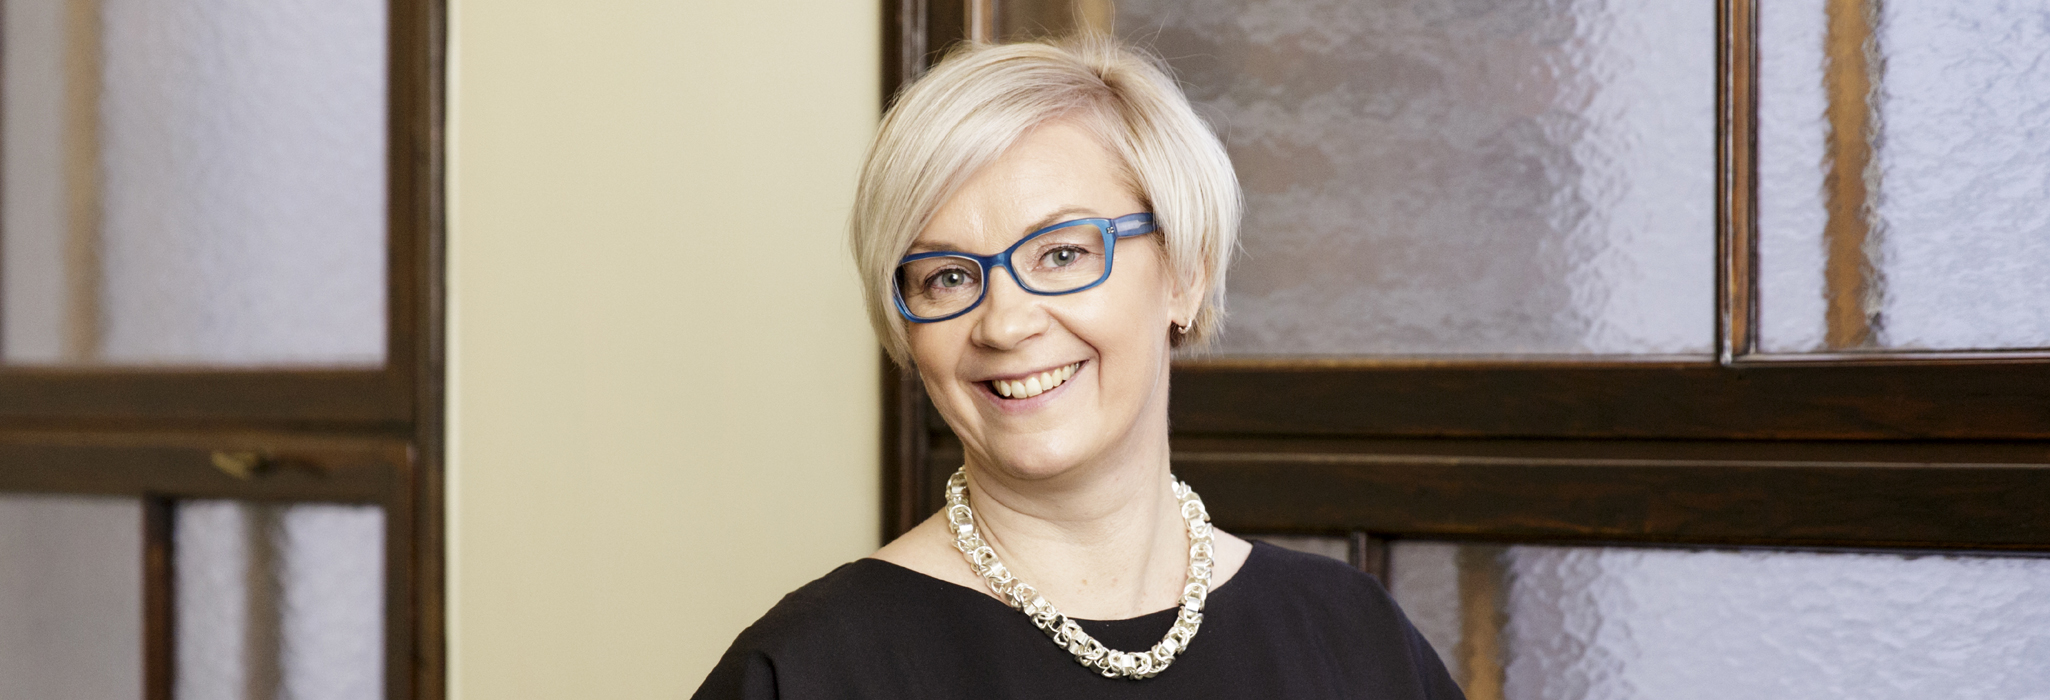 Restelin henkilöstojohtaja Marika Mäkelä: ”Henkilöstö on tärkein voimavaramme!”